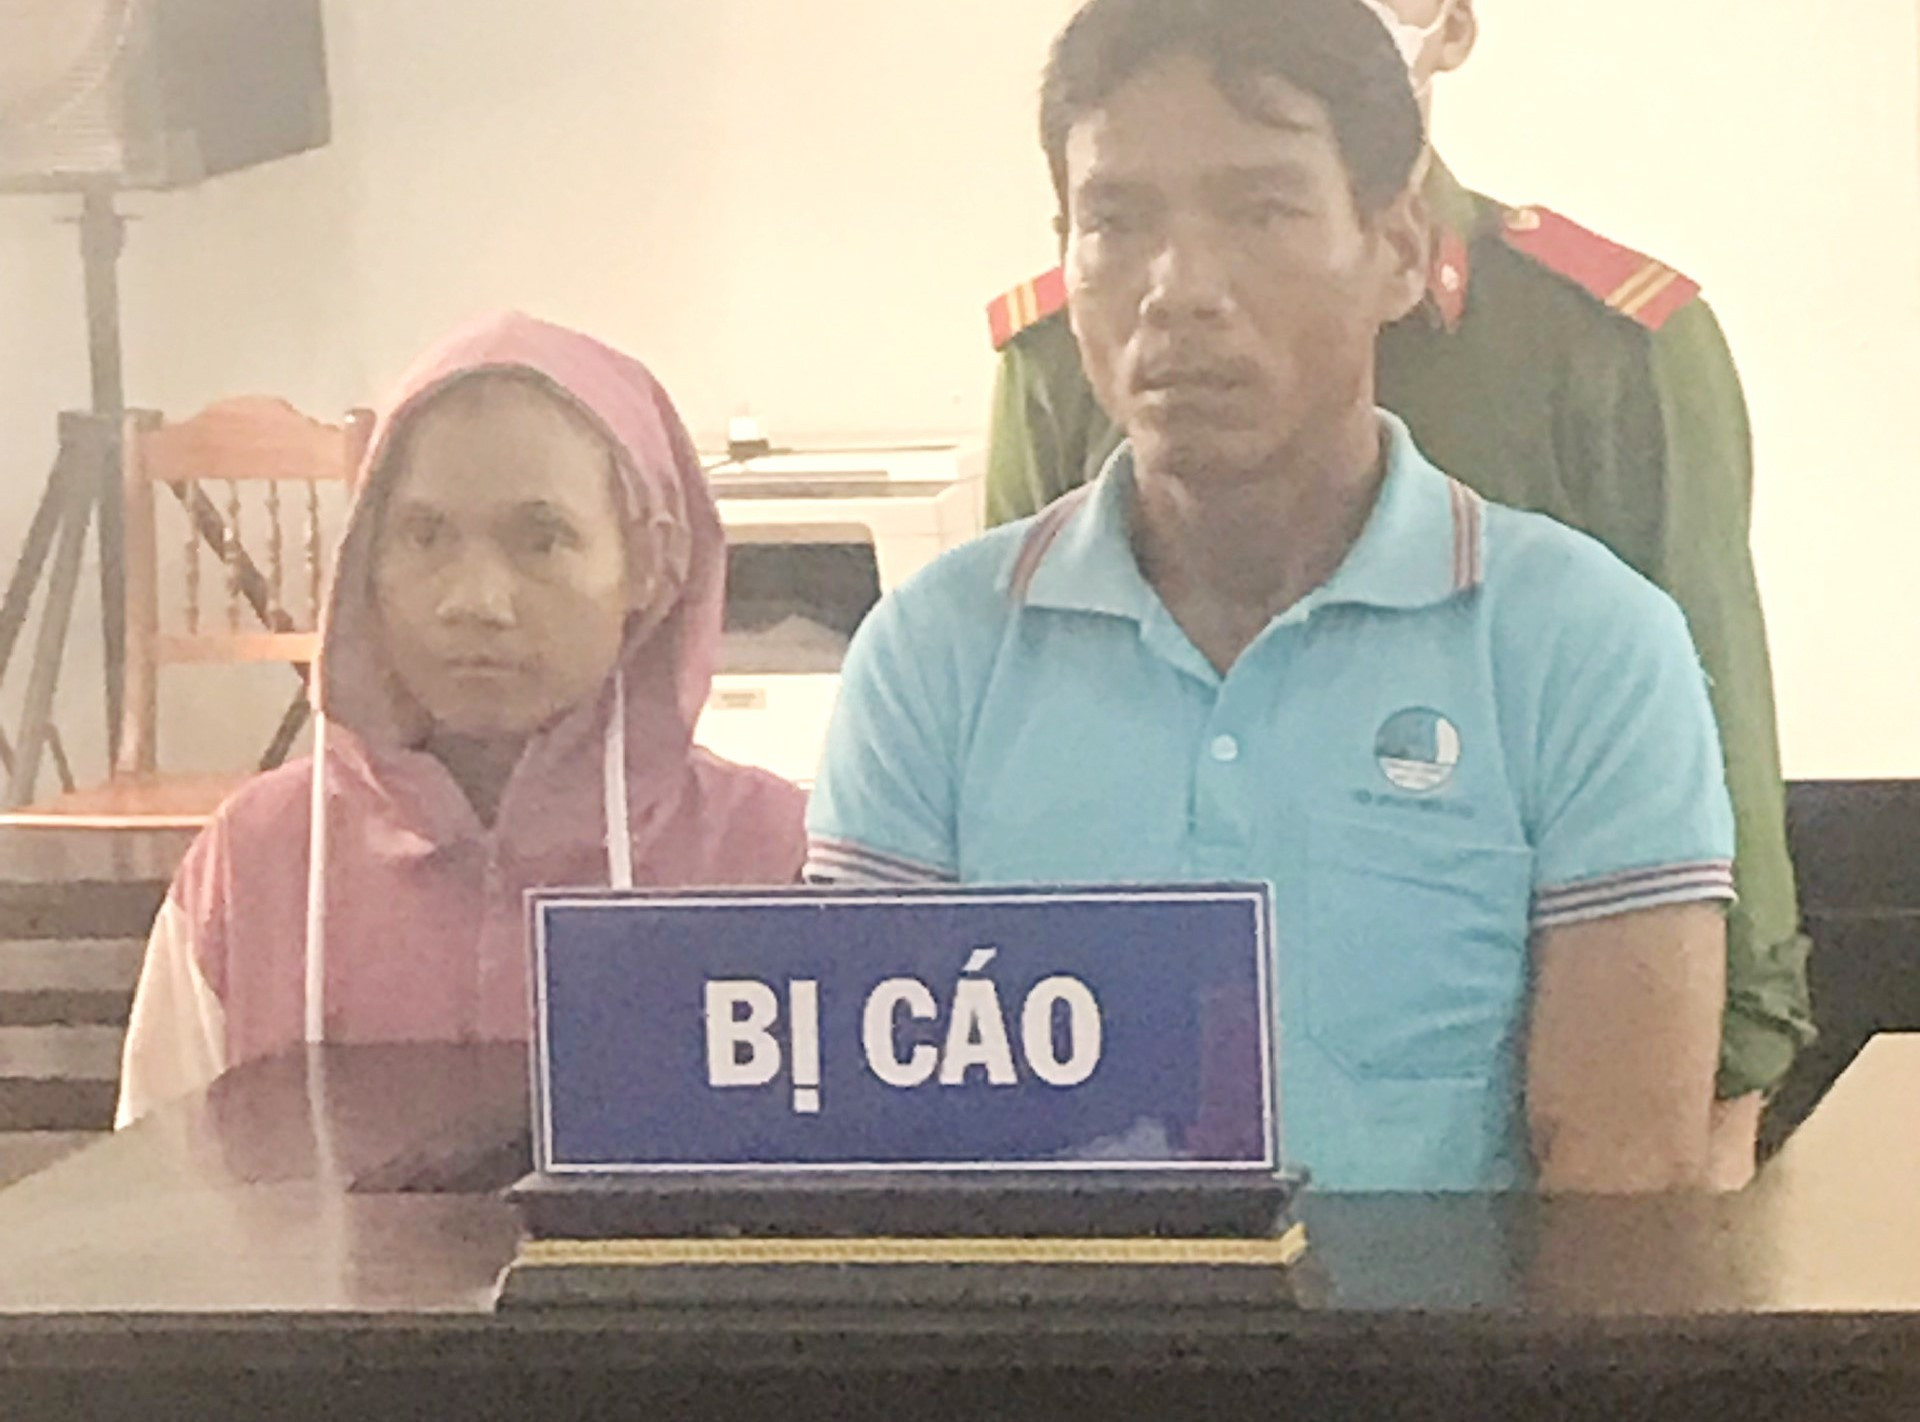 Bị cáo Nguyễn Thị Hằng (trái) đứng không vững, tóc rụng hết và xin được ngồi khi được xét hỏi tại phiên tòa. Ảnh: B.N